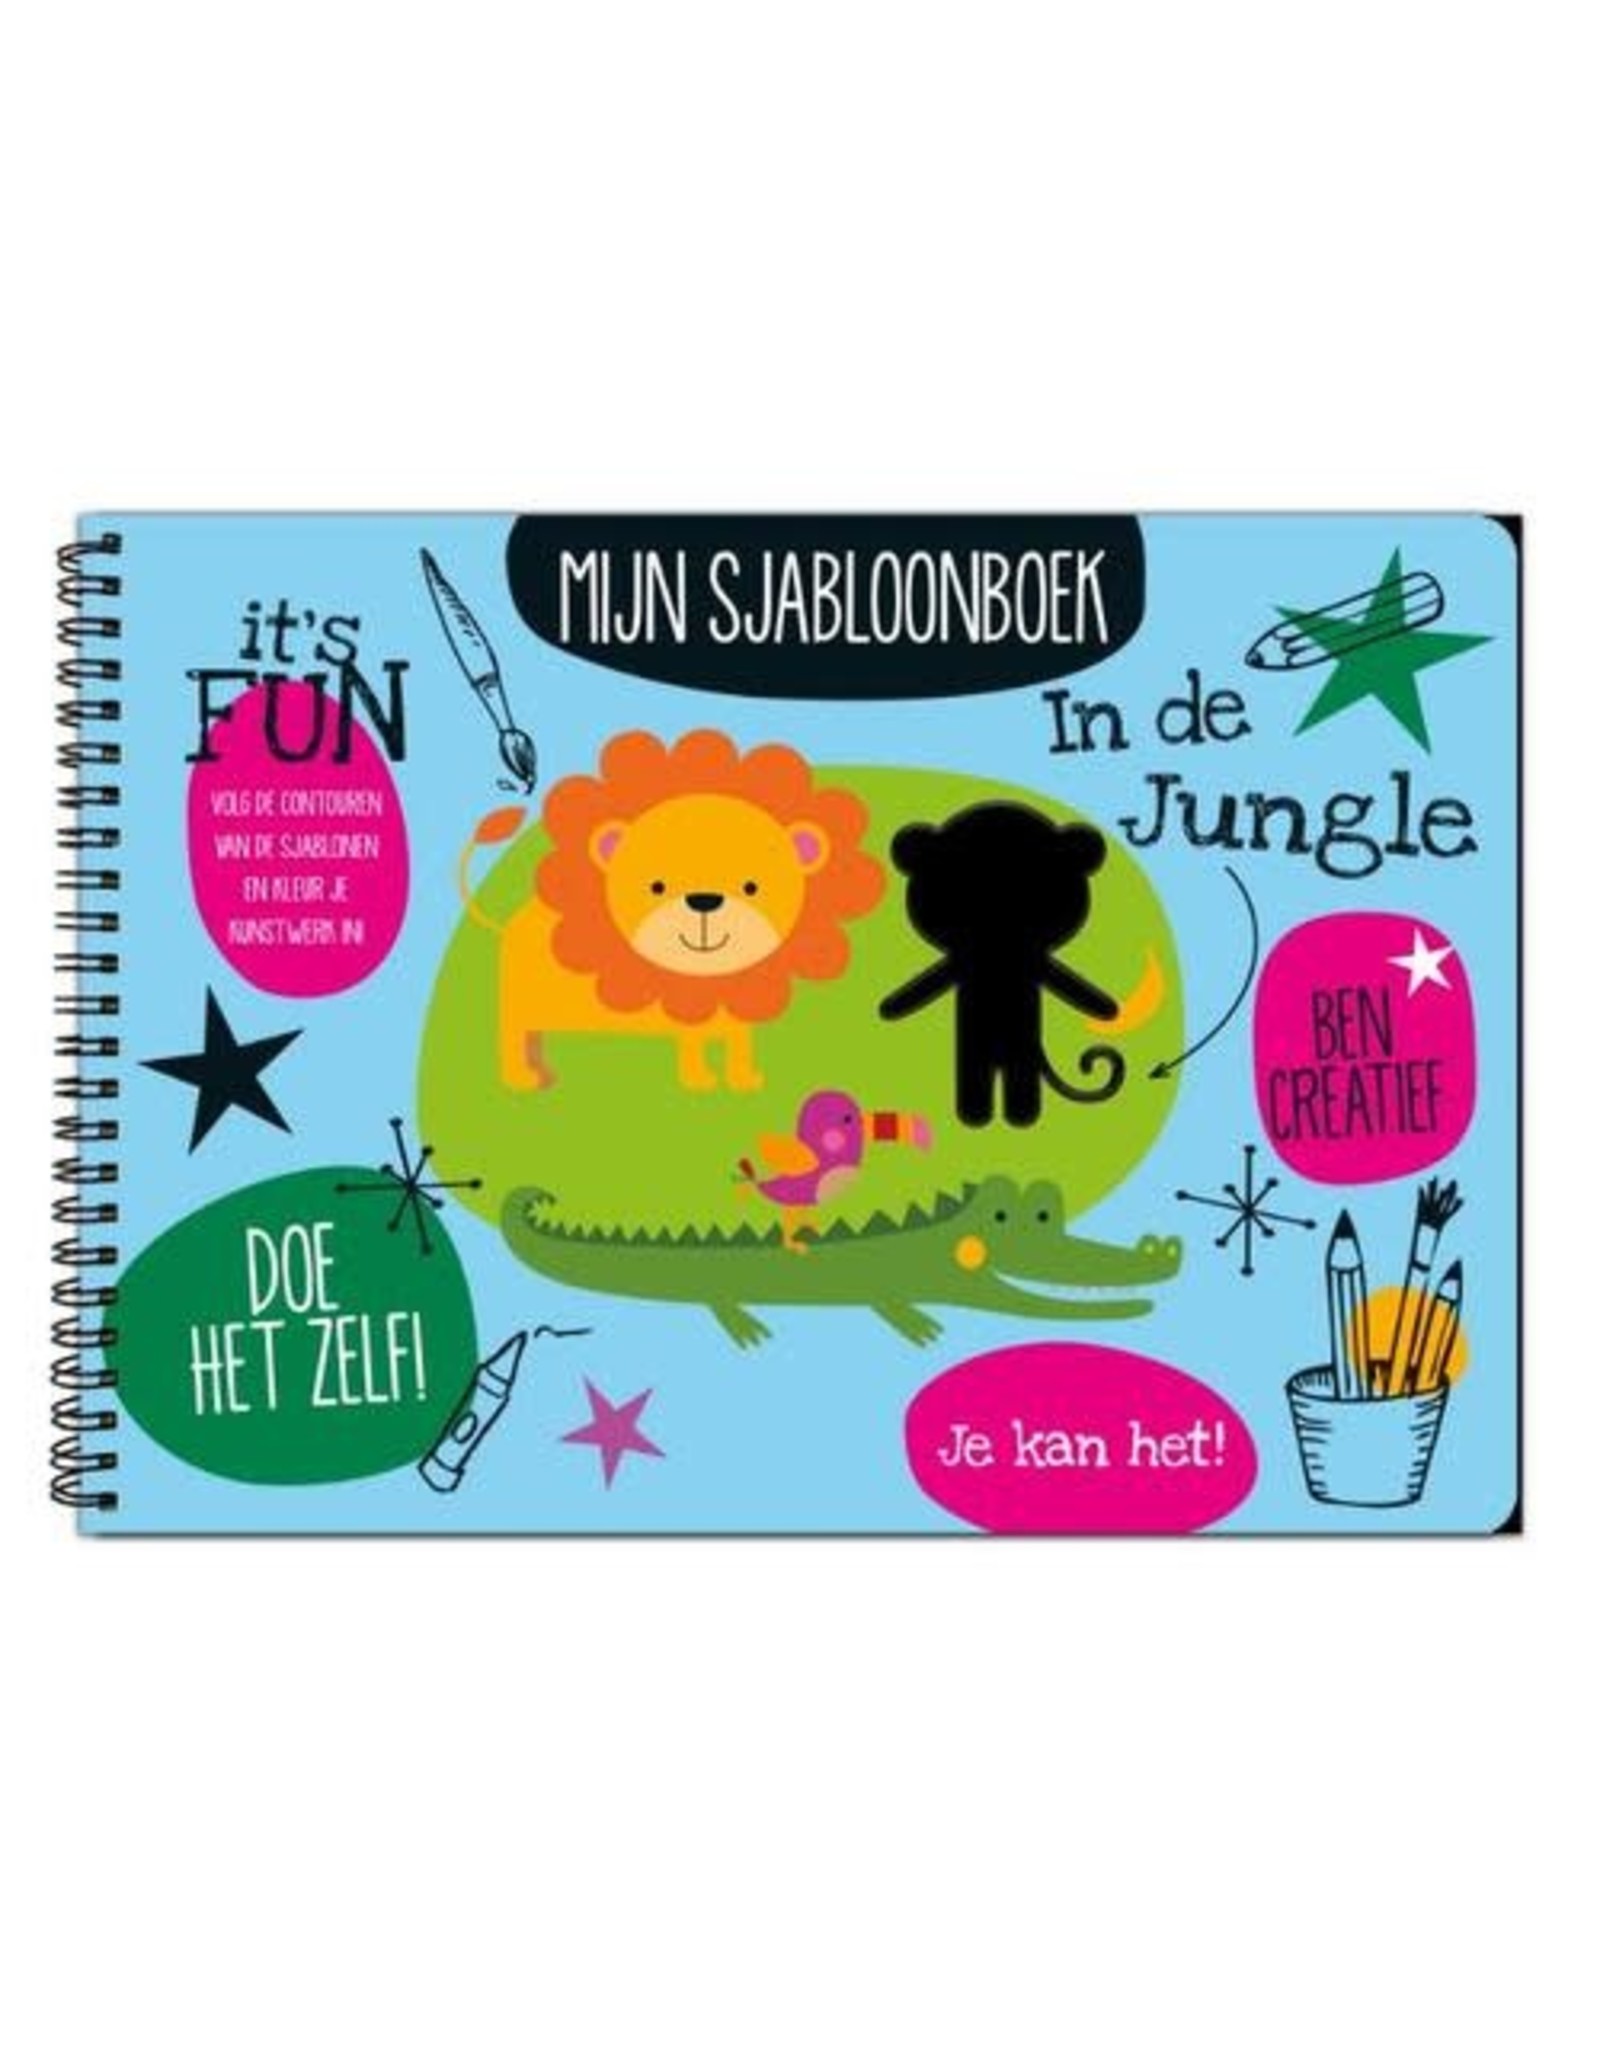 Mijn Sjabloonboek - In de jungle